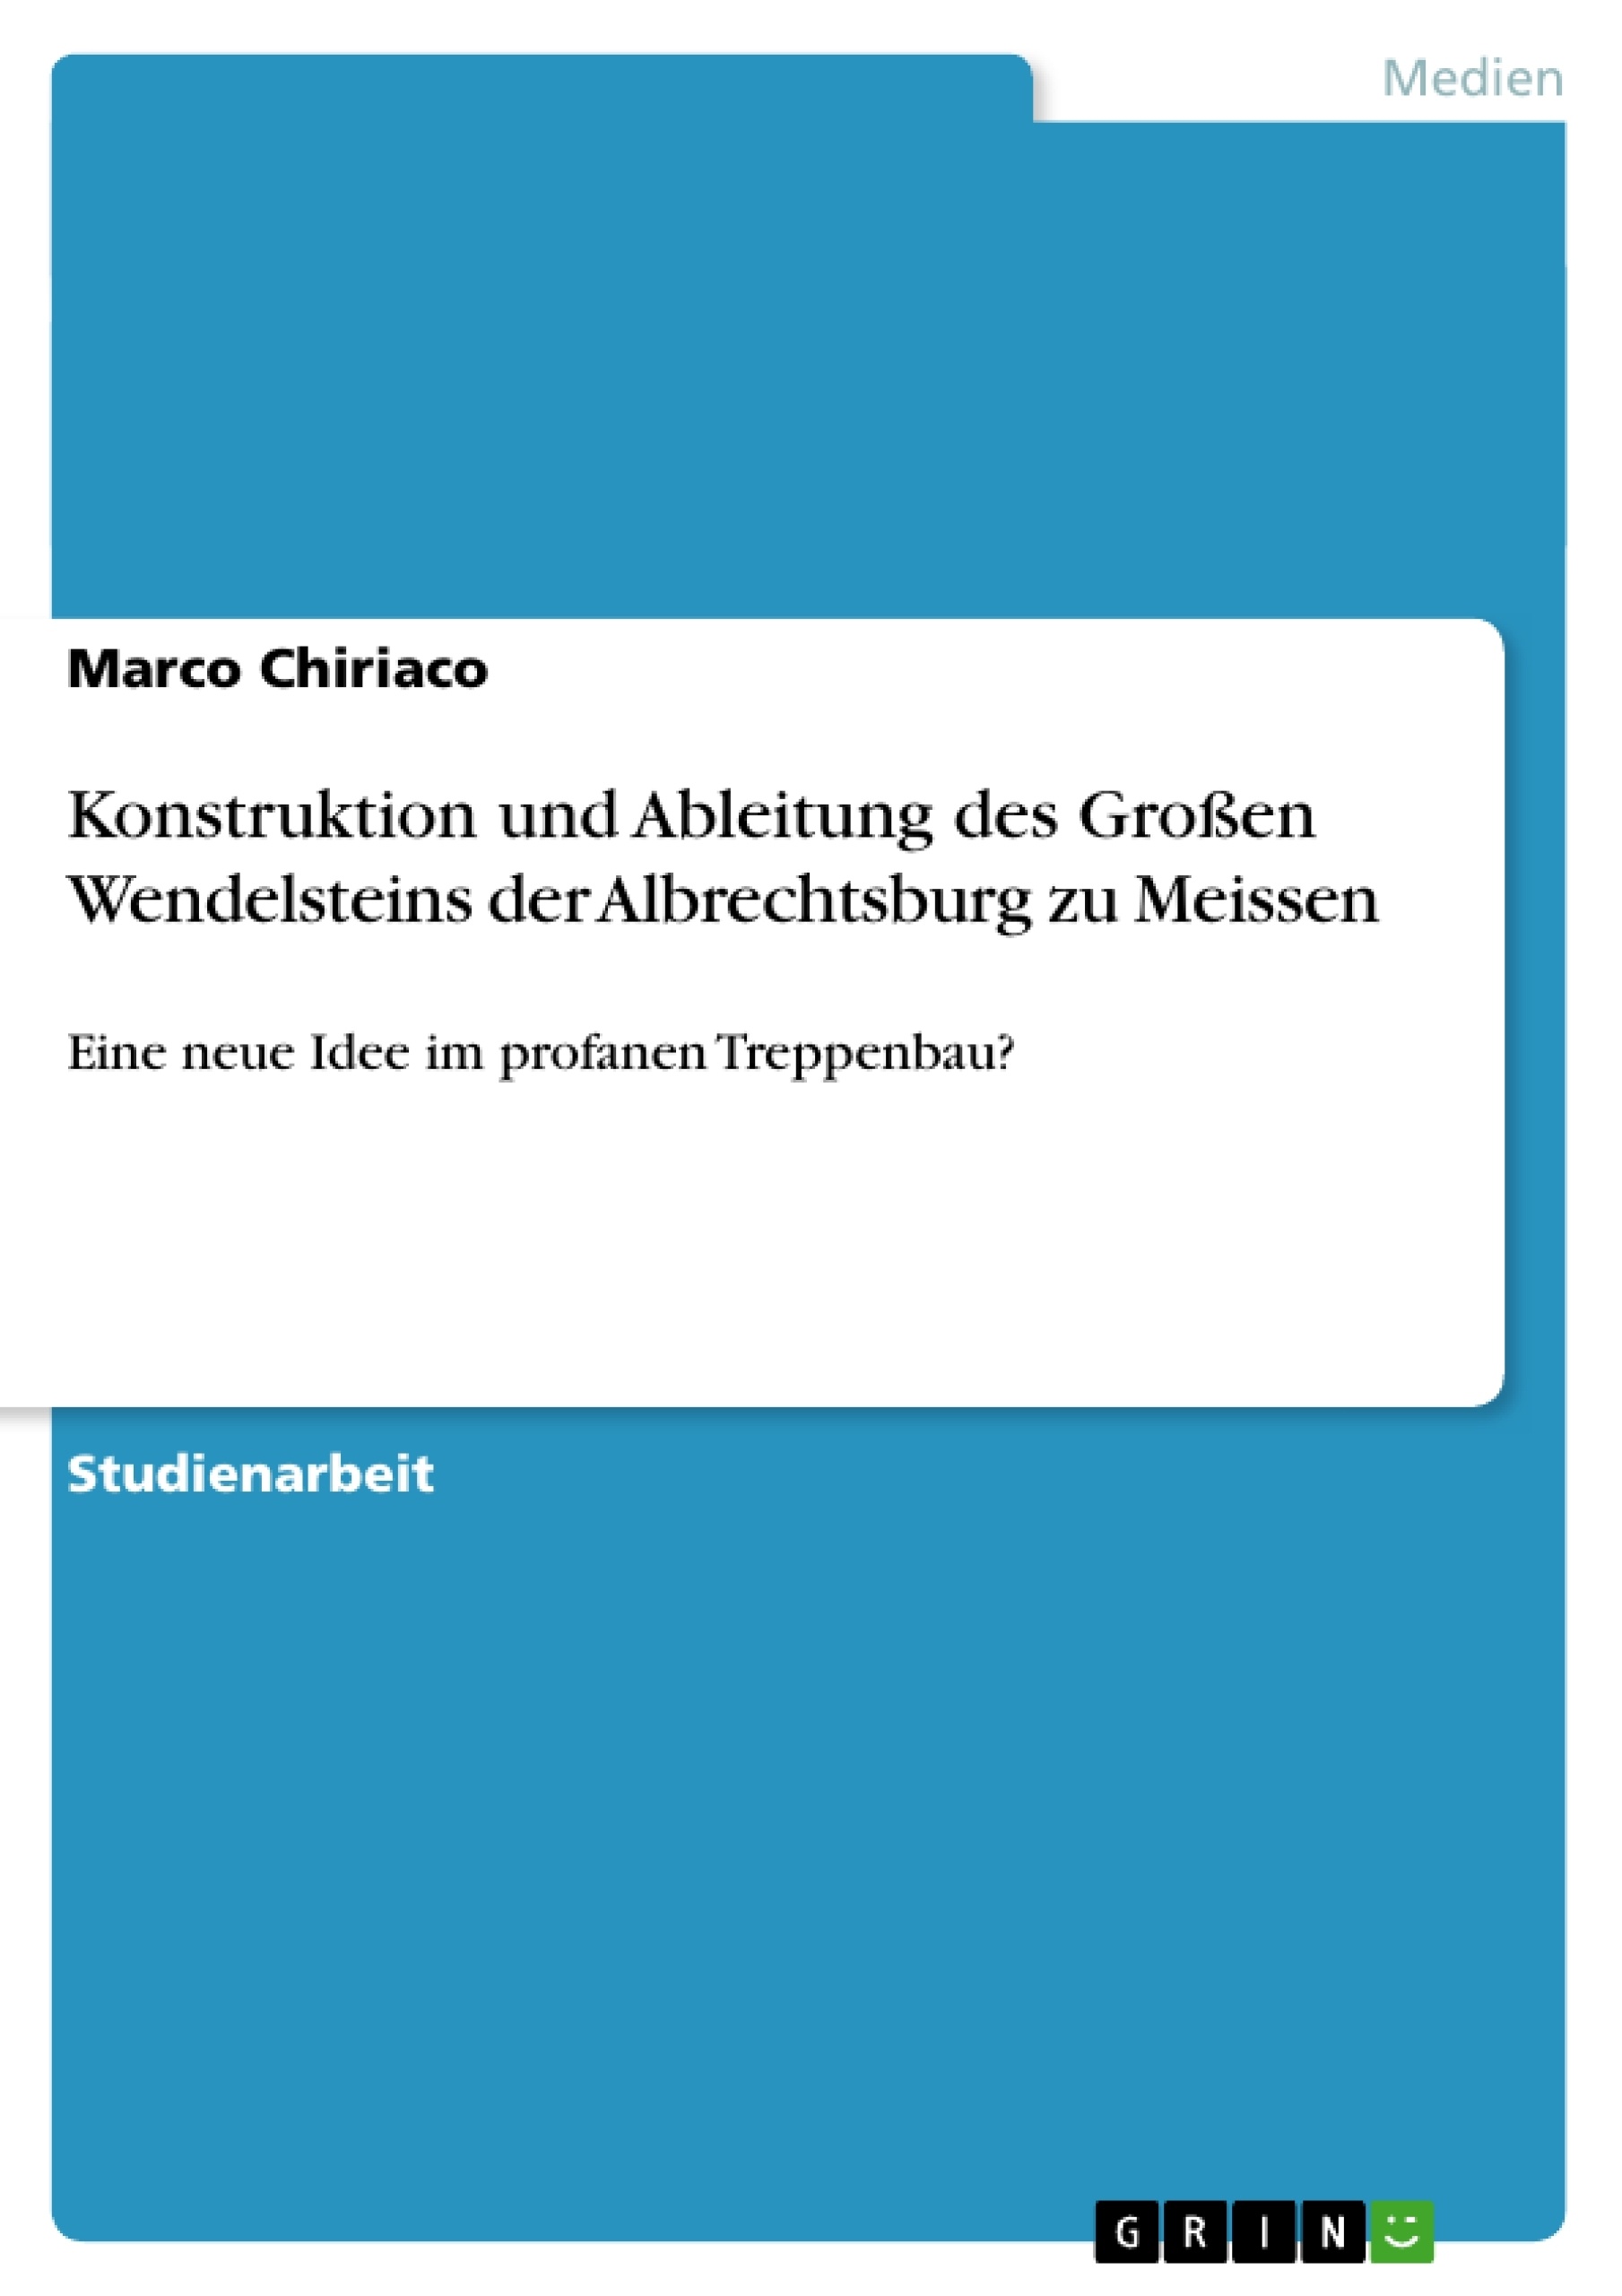 Título: Konstruktion und Ableitung des Großen Wendelsteins der Albrechtsburg zu Meissen